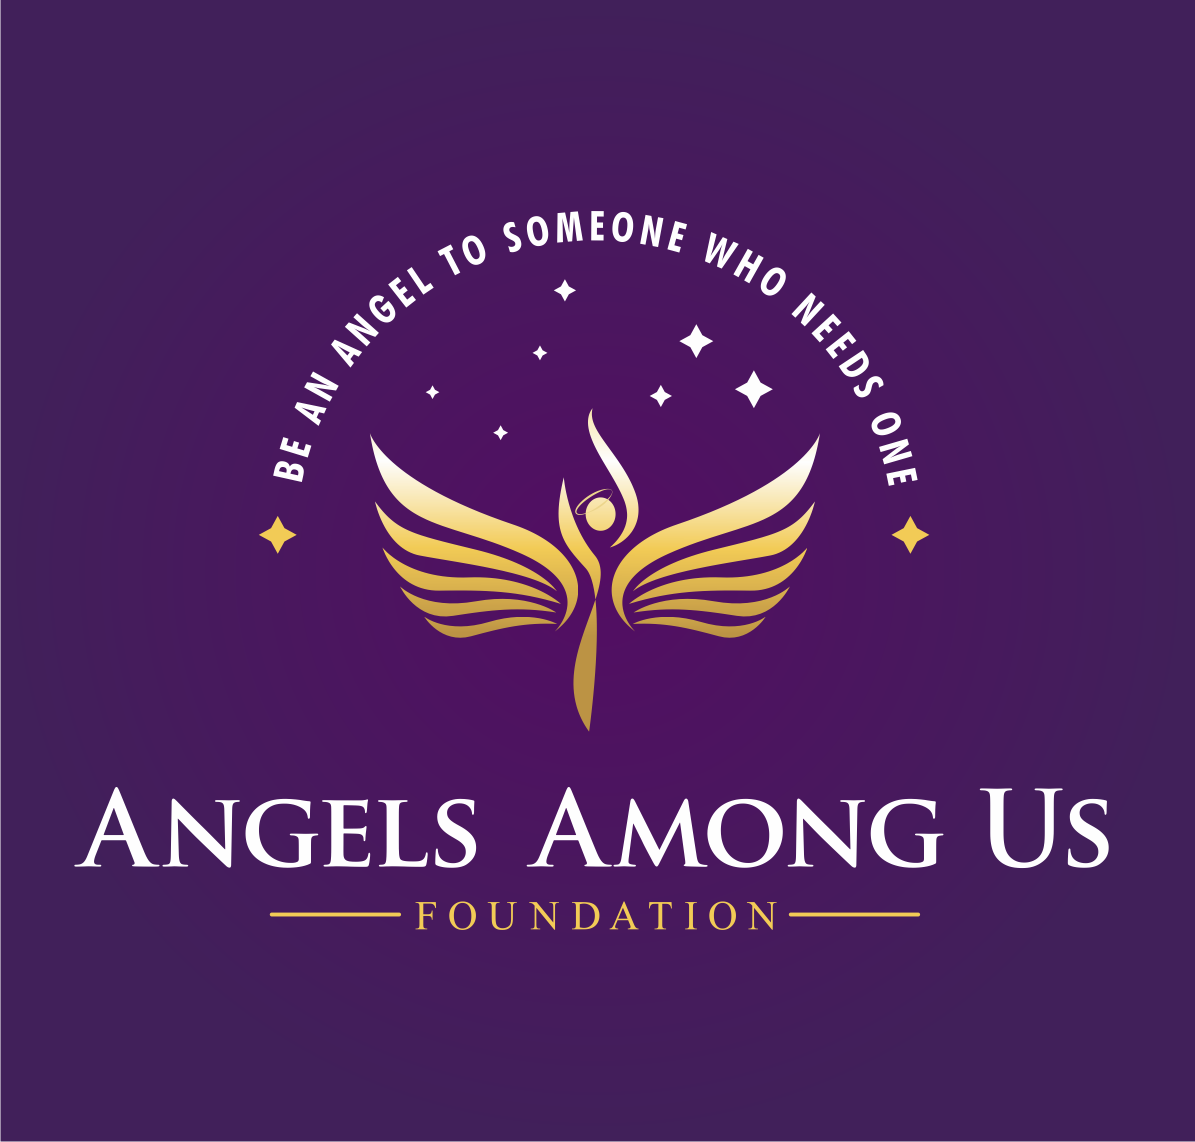 Angels Among Us Foundation logo